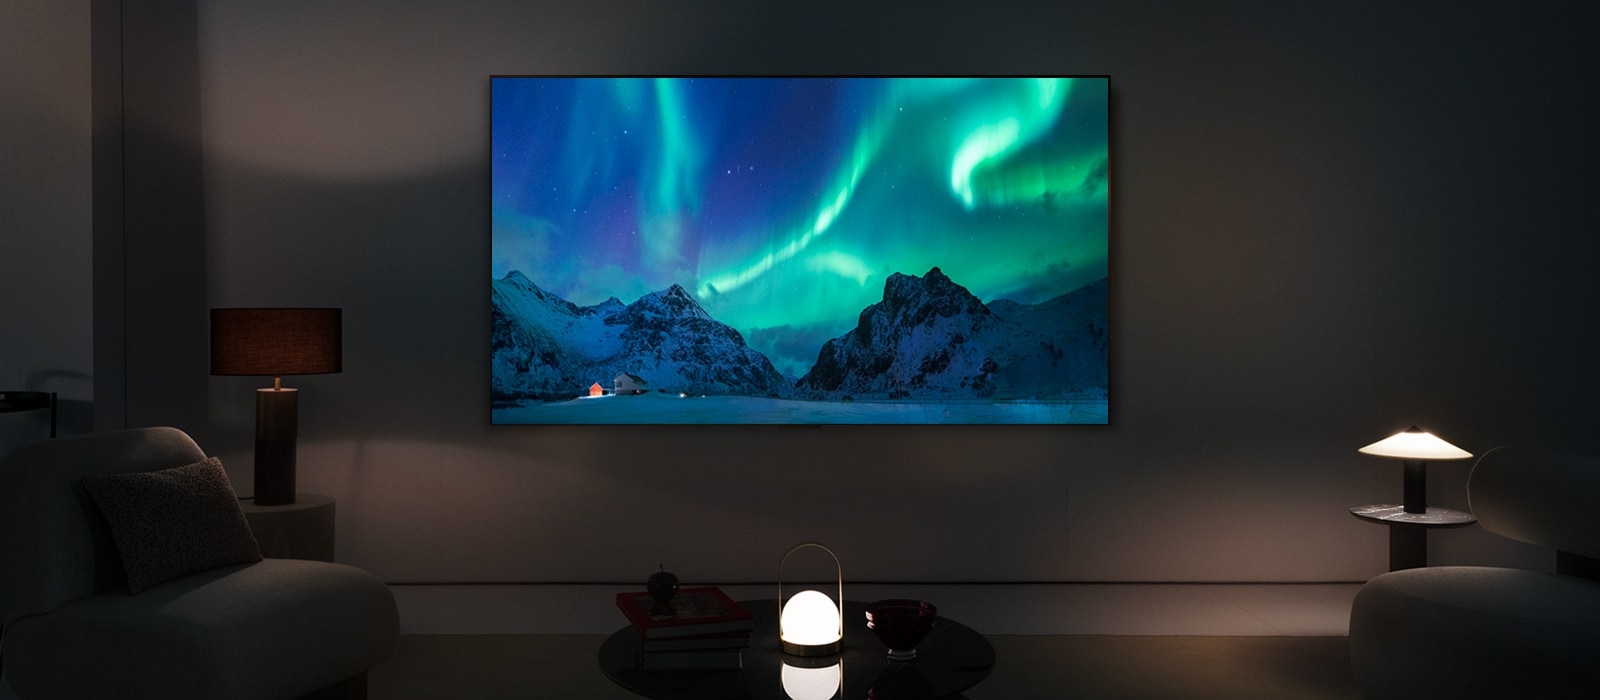 LG OLED TV i LG soundbar u savremenom životnom prostoru tokom noći. Na ekranu je prikazana slika polarne svetlosti na idealnom nivou osvetljenosti.